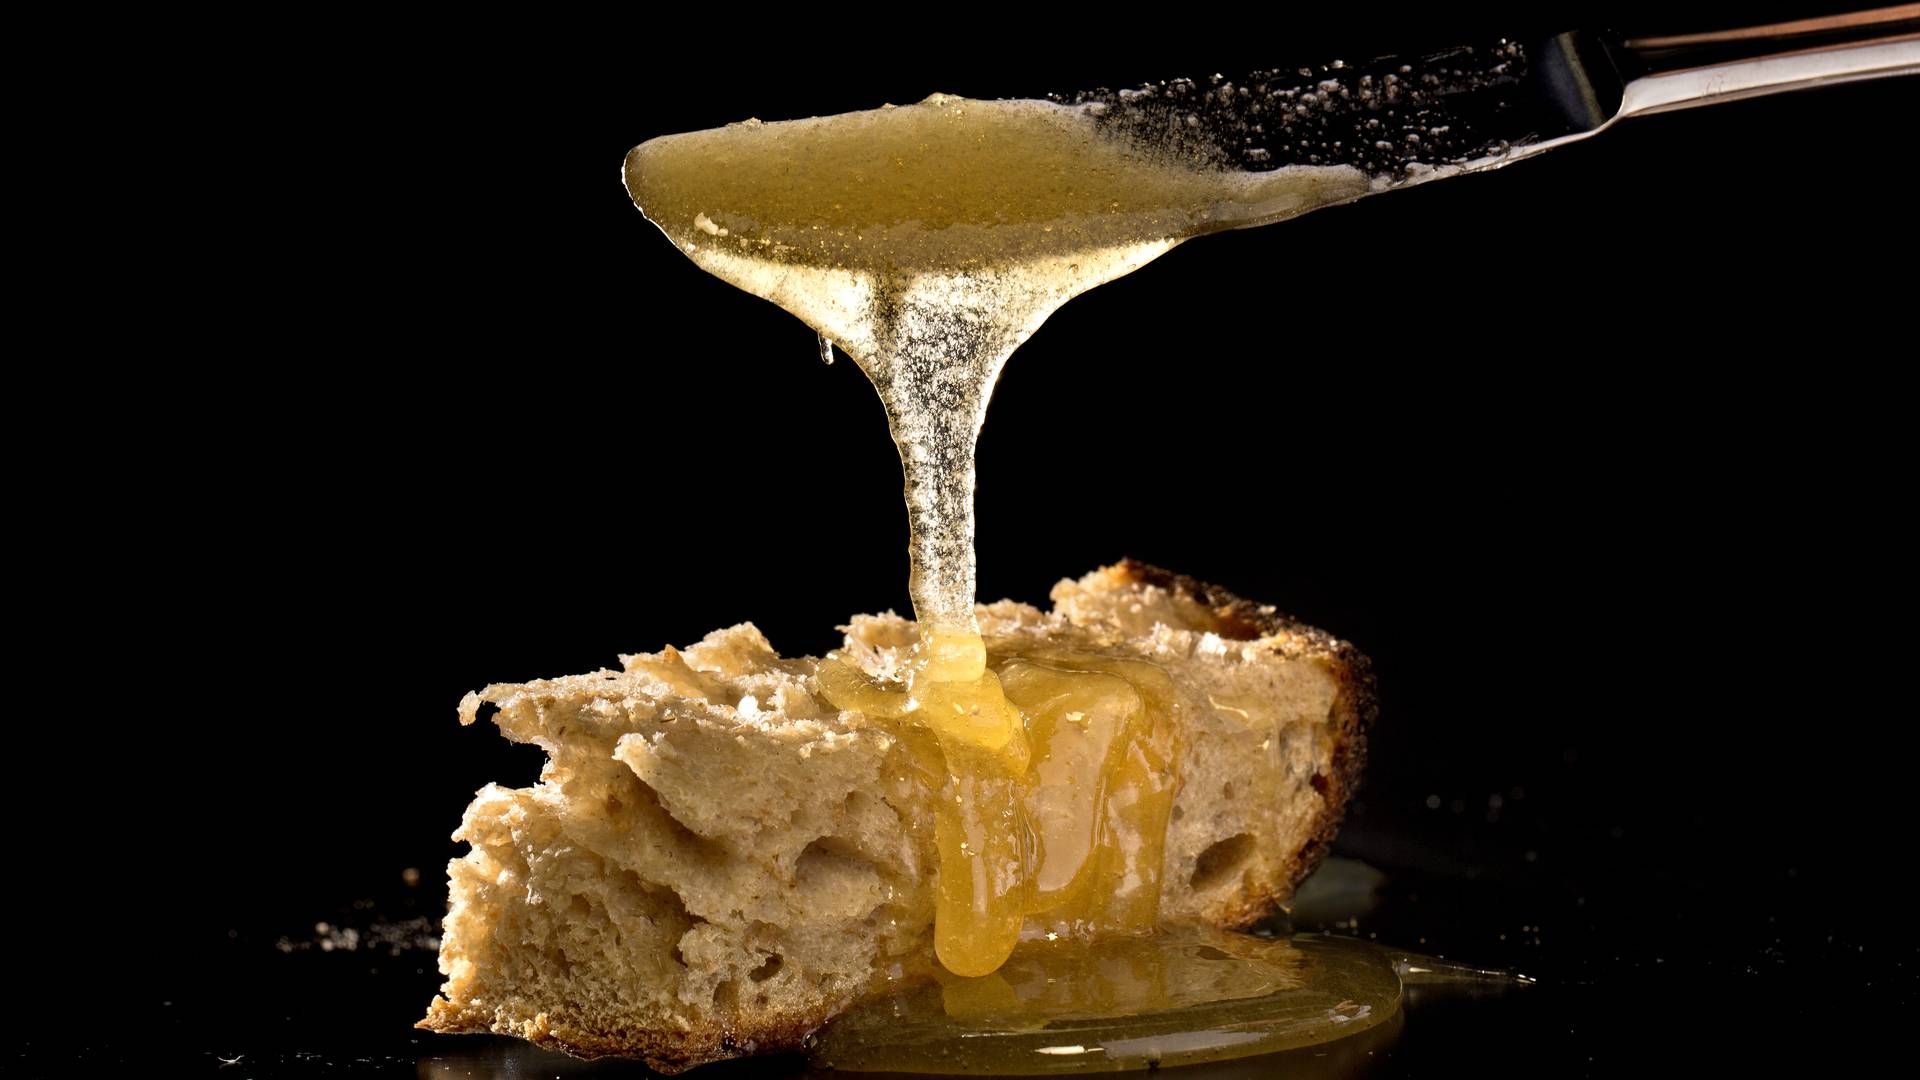 Klimaforandringer har betydet dårligt høst, og sparket prisen på akaciehonning i vejret. Honningvirksomheden Jakobsens vil dog ikke købe honning fra Kina, da de ikke vil risikere at sælge honning der ikke er rent. | Foto: Jacob Ehrbahn / Ritzau / Scanpix